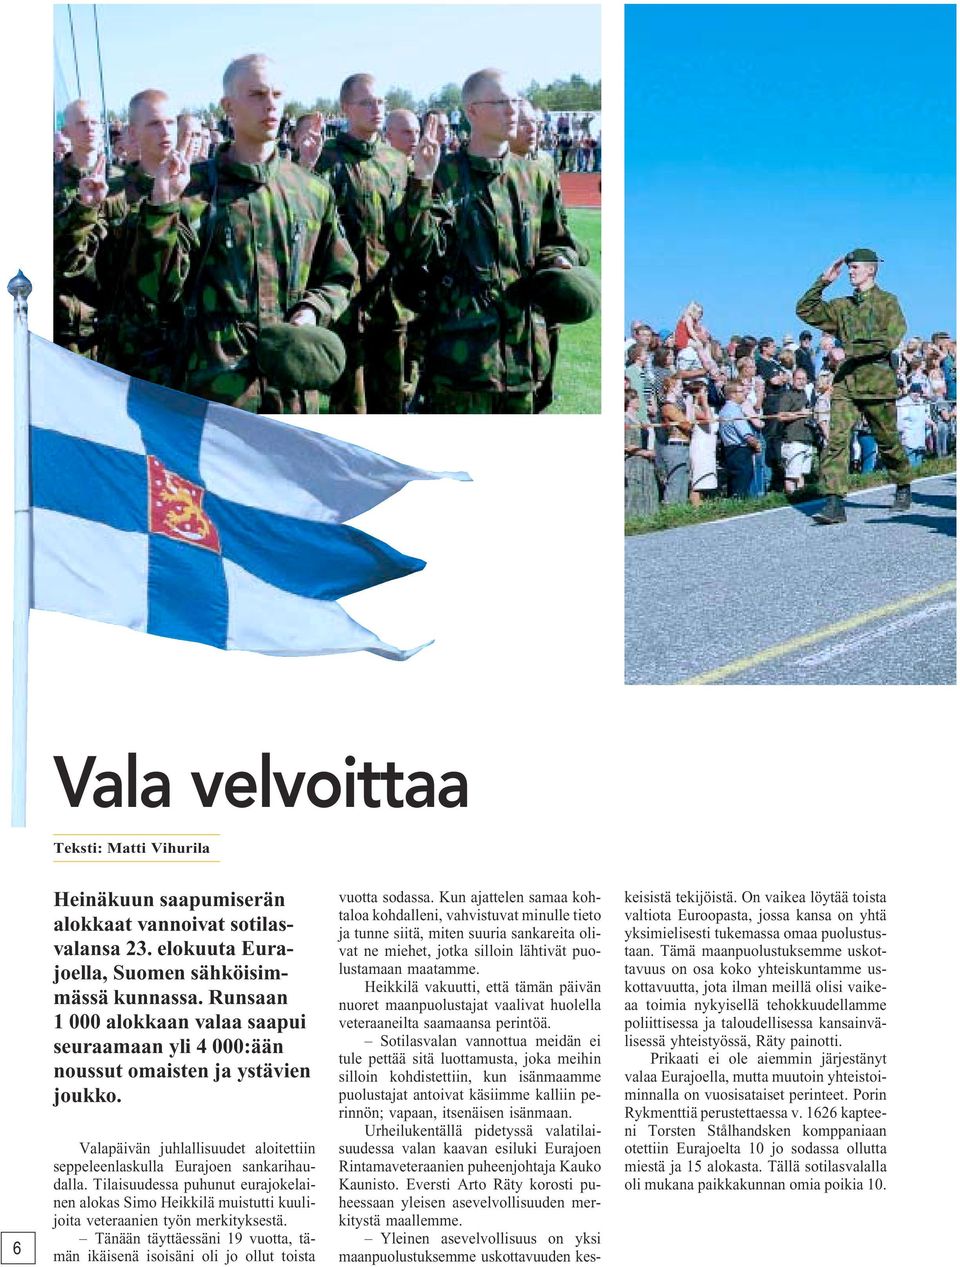 Tilaisuudessa puhunut eurajokelainen alokas Simo Heikkilä muistutti kuulijoita veteraanien työn merkityksestä.